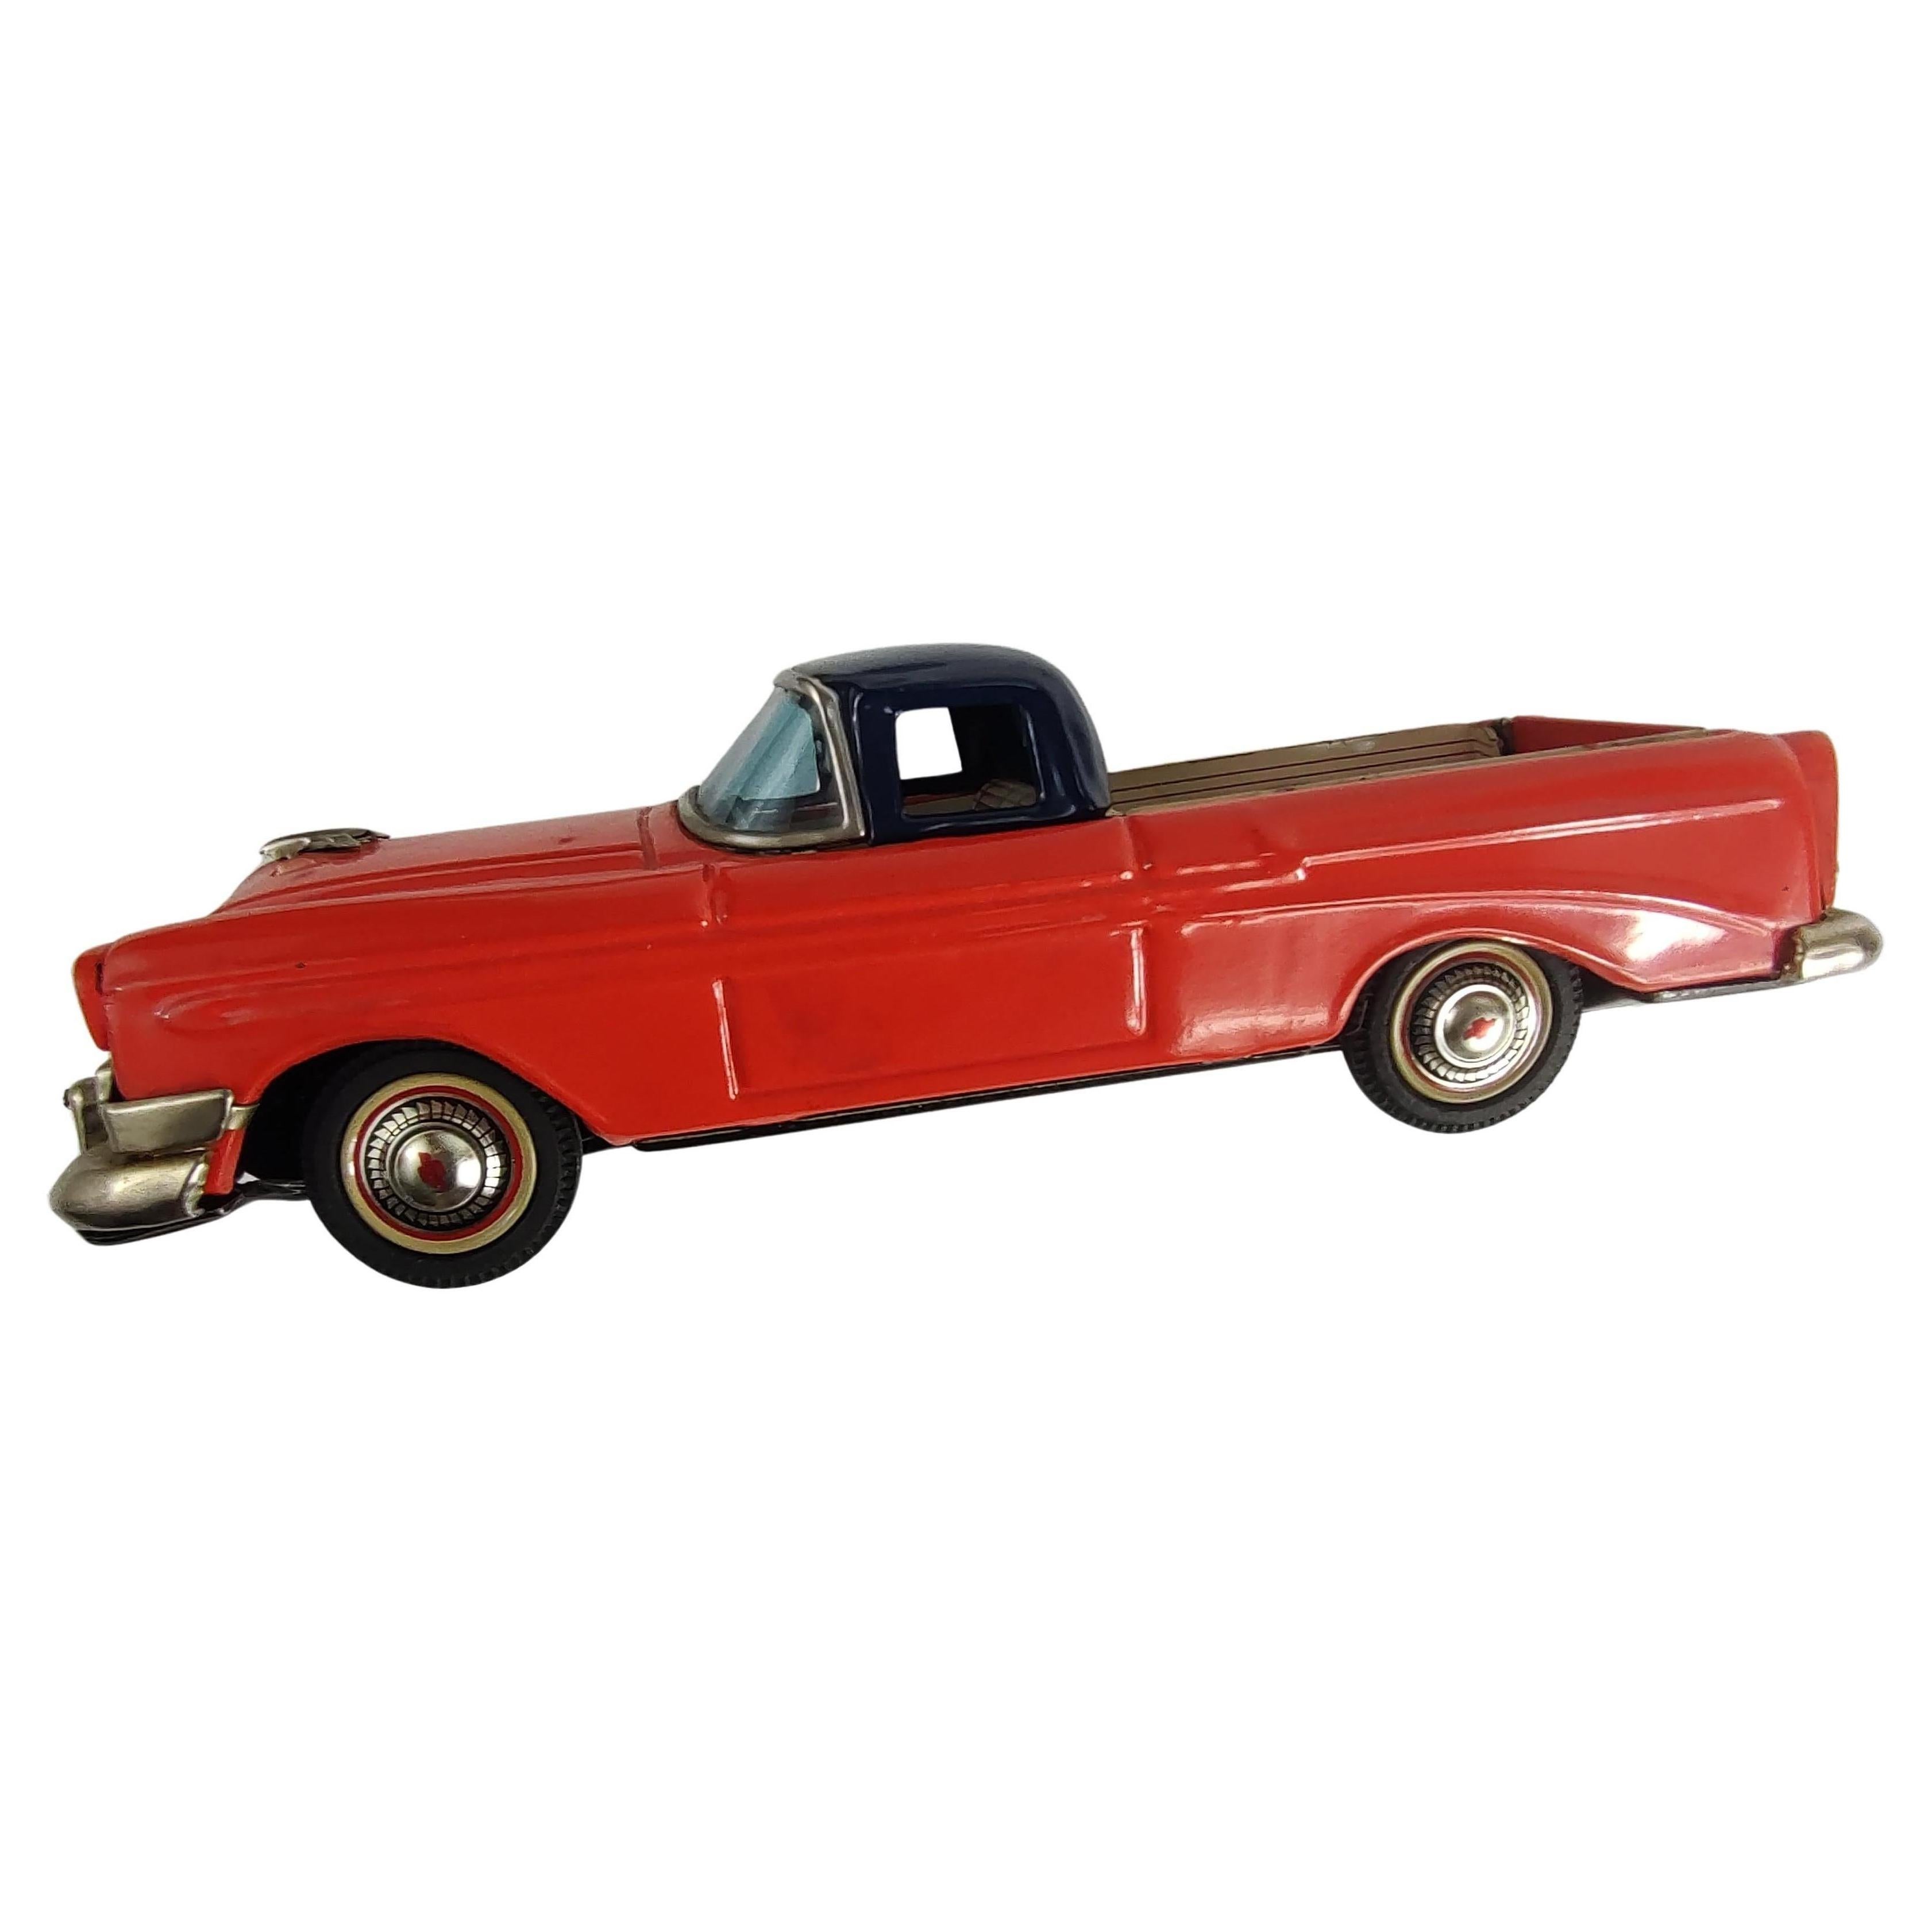 Moteur à friction fantastique et carrosserie en étain liho en excellent état vintage. C Chevrolet El Camino de 1956 en rouge et noir avec un hayon rabattable. Japonais du milieu des années cinquante. Condit est un modèle difficile à trouver dans cet